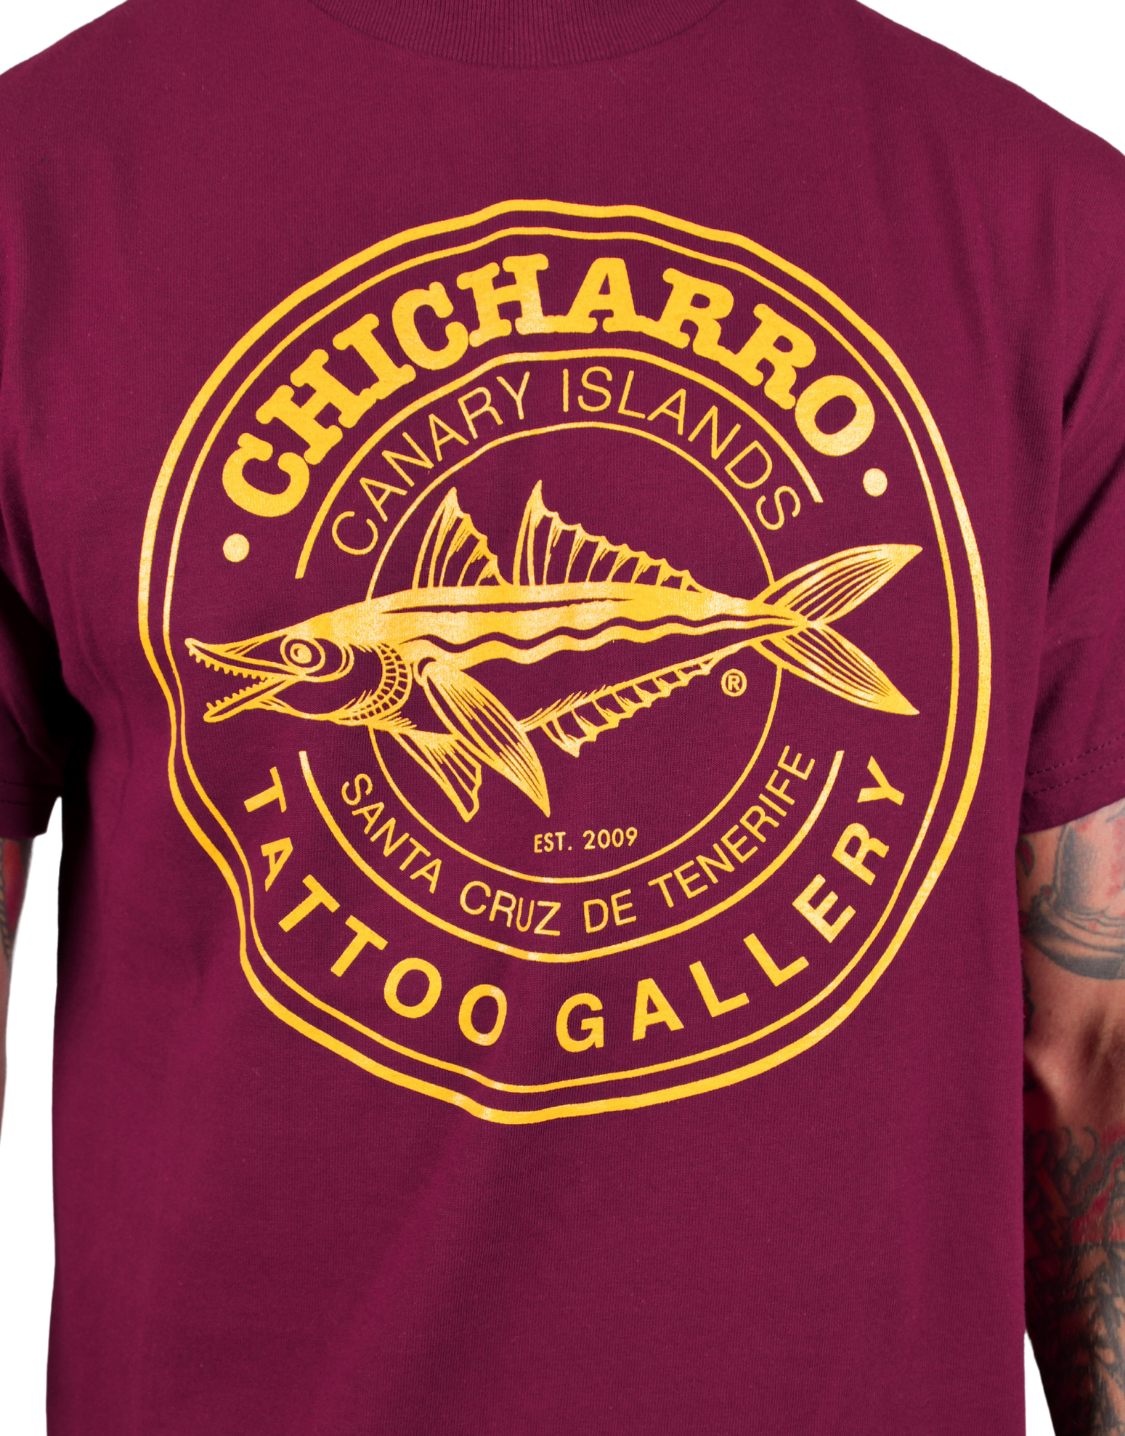 Chicharro Tattoo Gallery Online Store